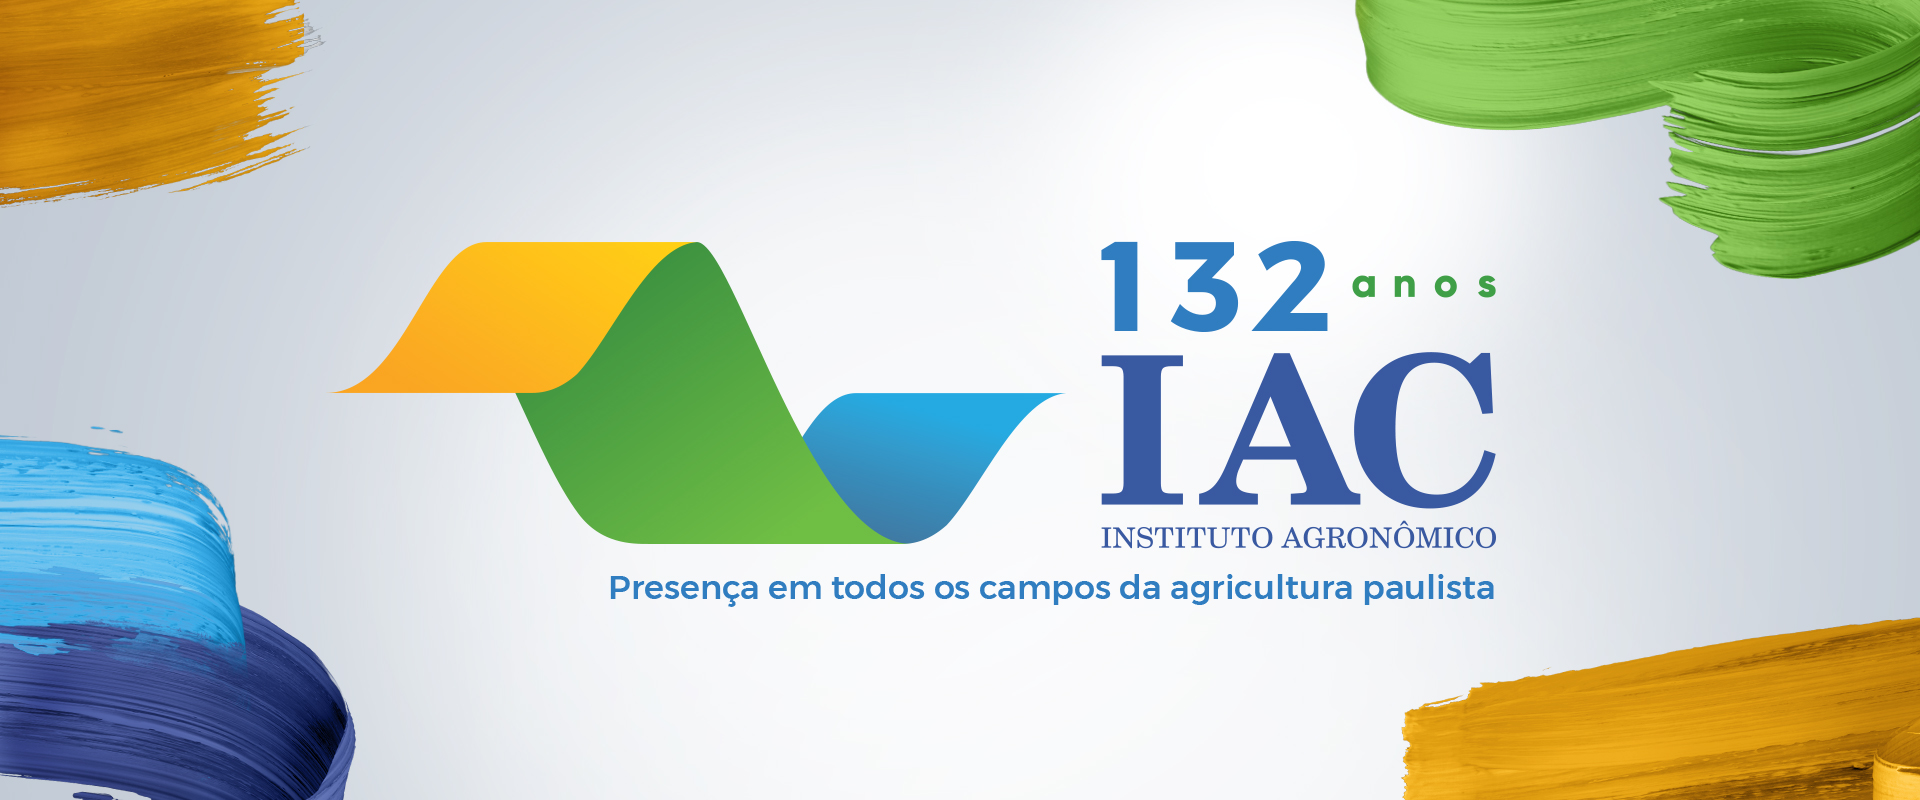 10ª campanha de aniversário do IAC celebra os 132 anos da instituição